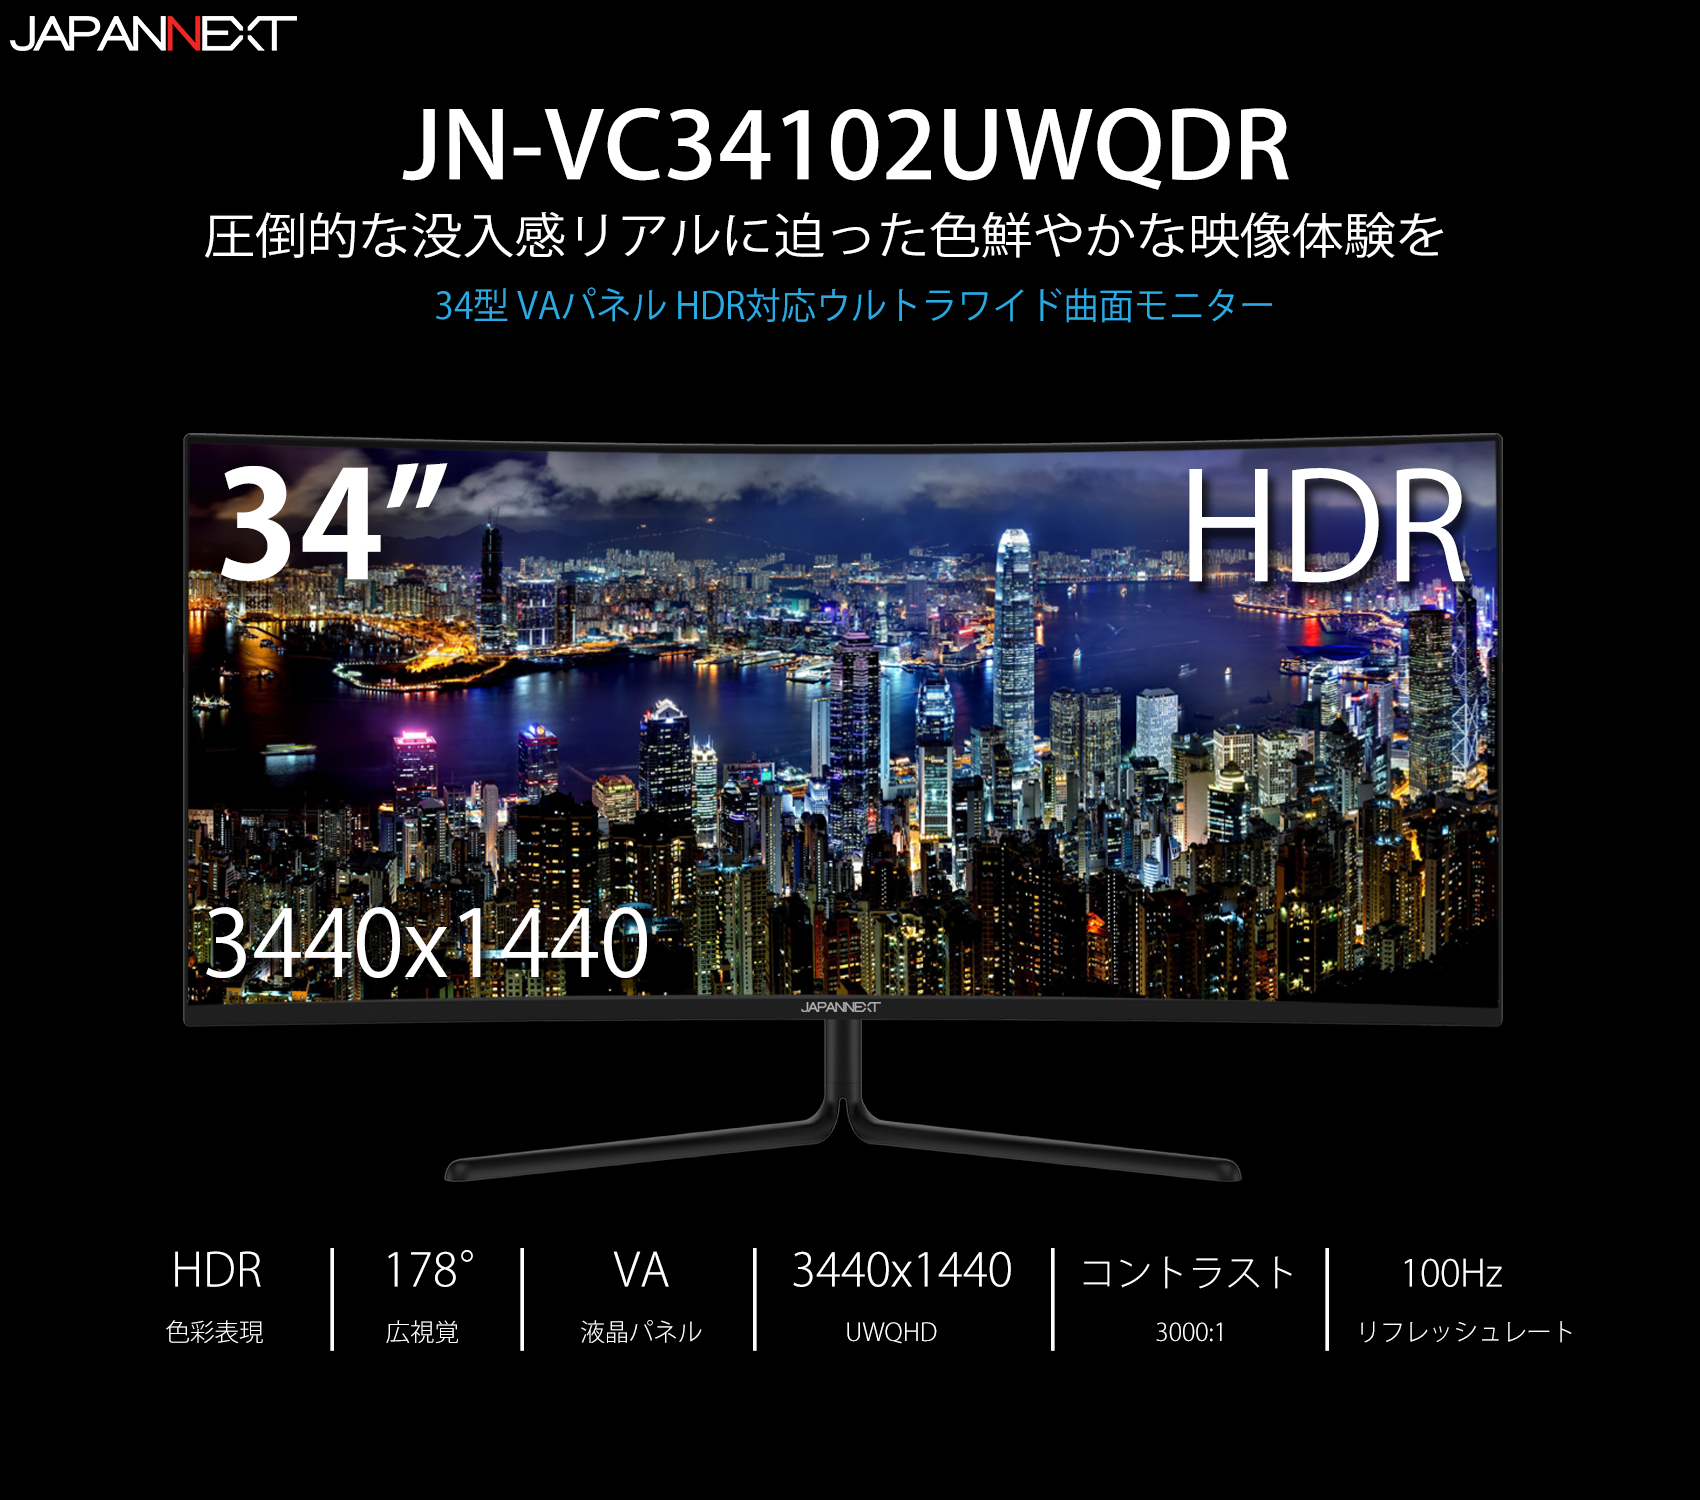 JN-VC34102UWQHDR 曲面ウルトラワイドモニター